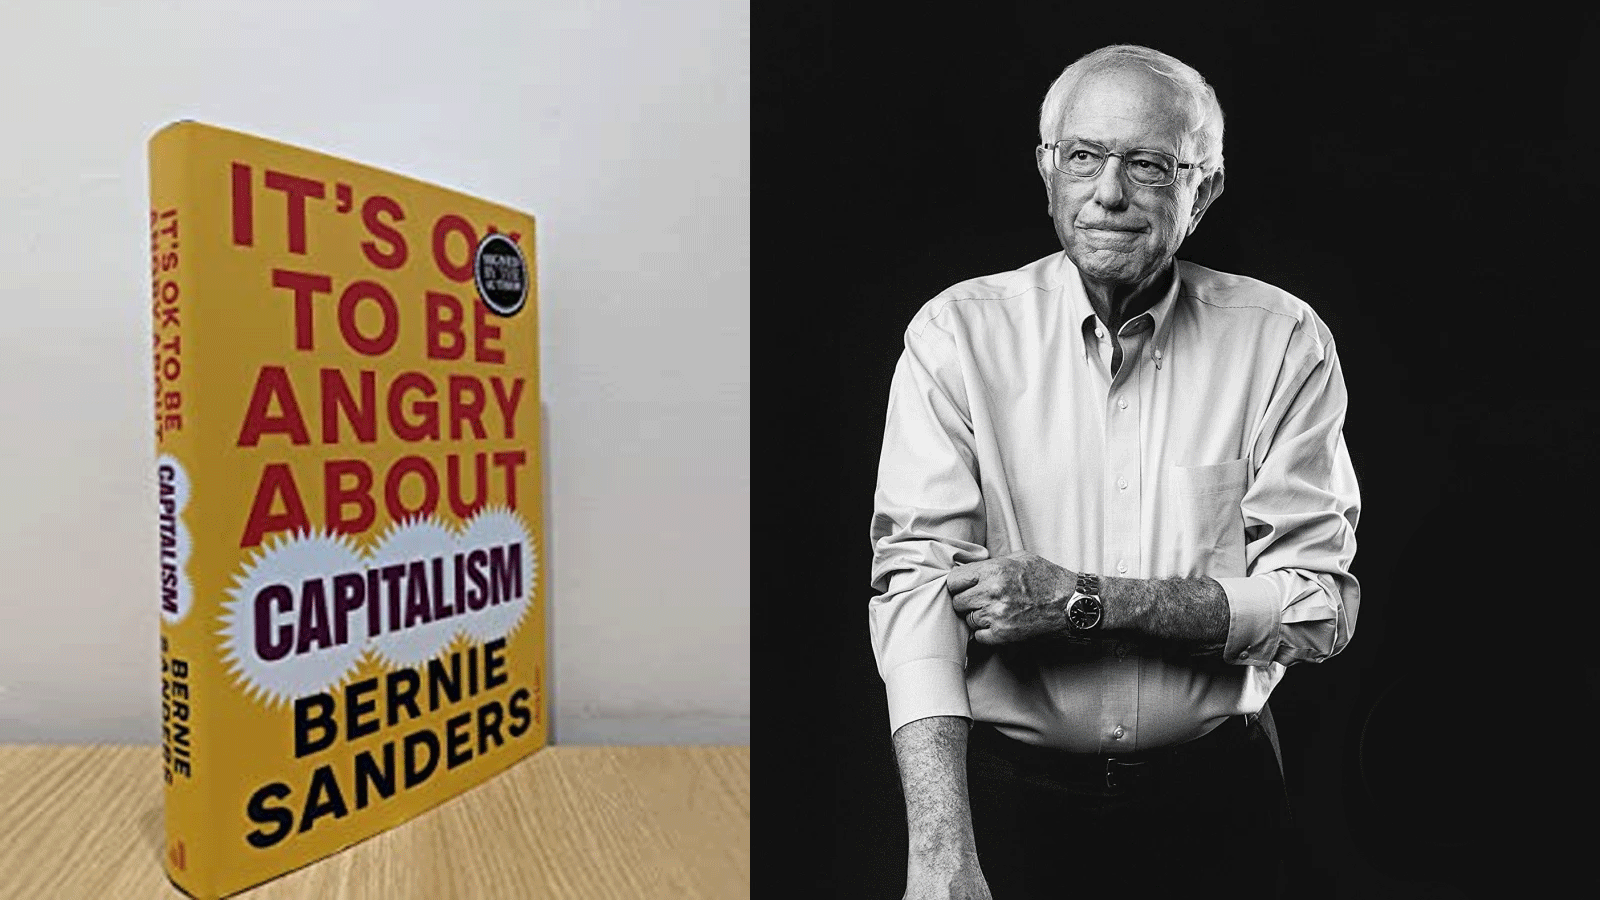 صورة مجمعة للسناتور الأميركي بيرني ساندرز مع كتابه It's OK to Be Angry About Capitalism